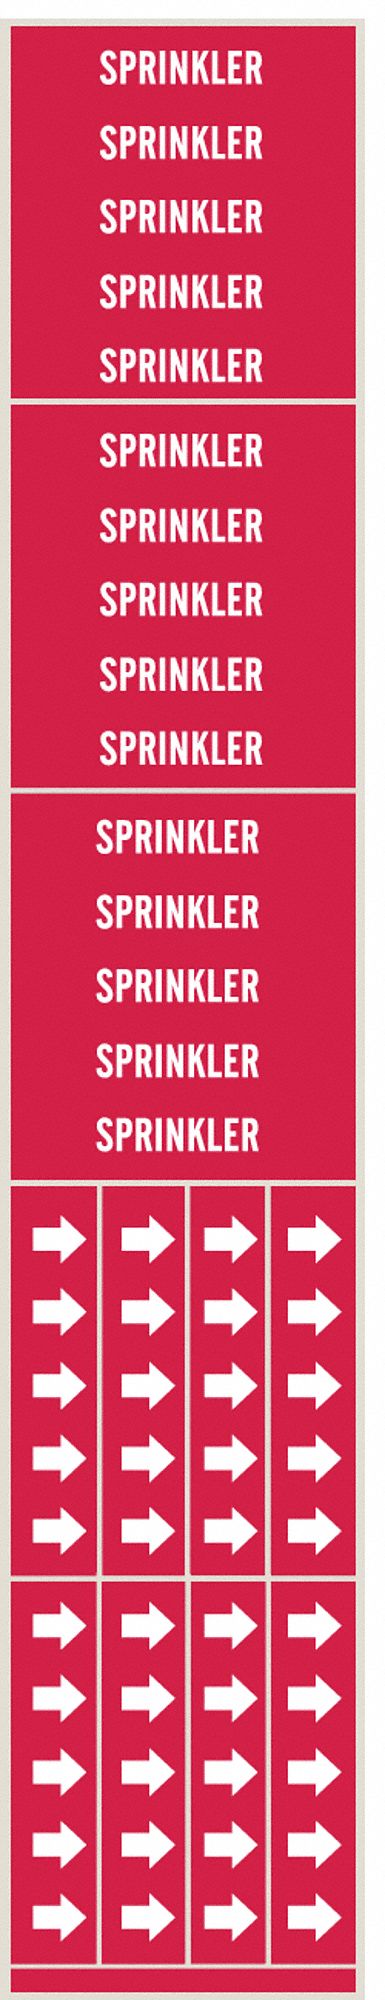 Pipe Marker,Sprinkler,Red,3/4 In or Less